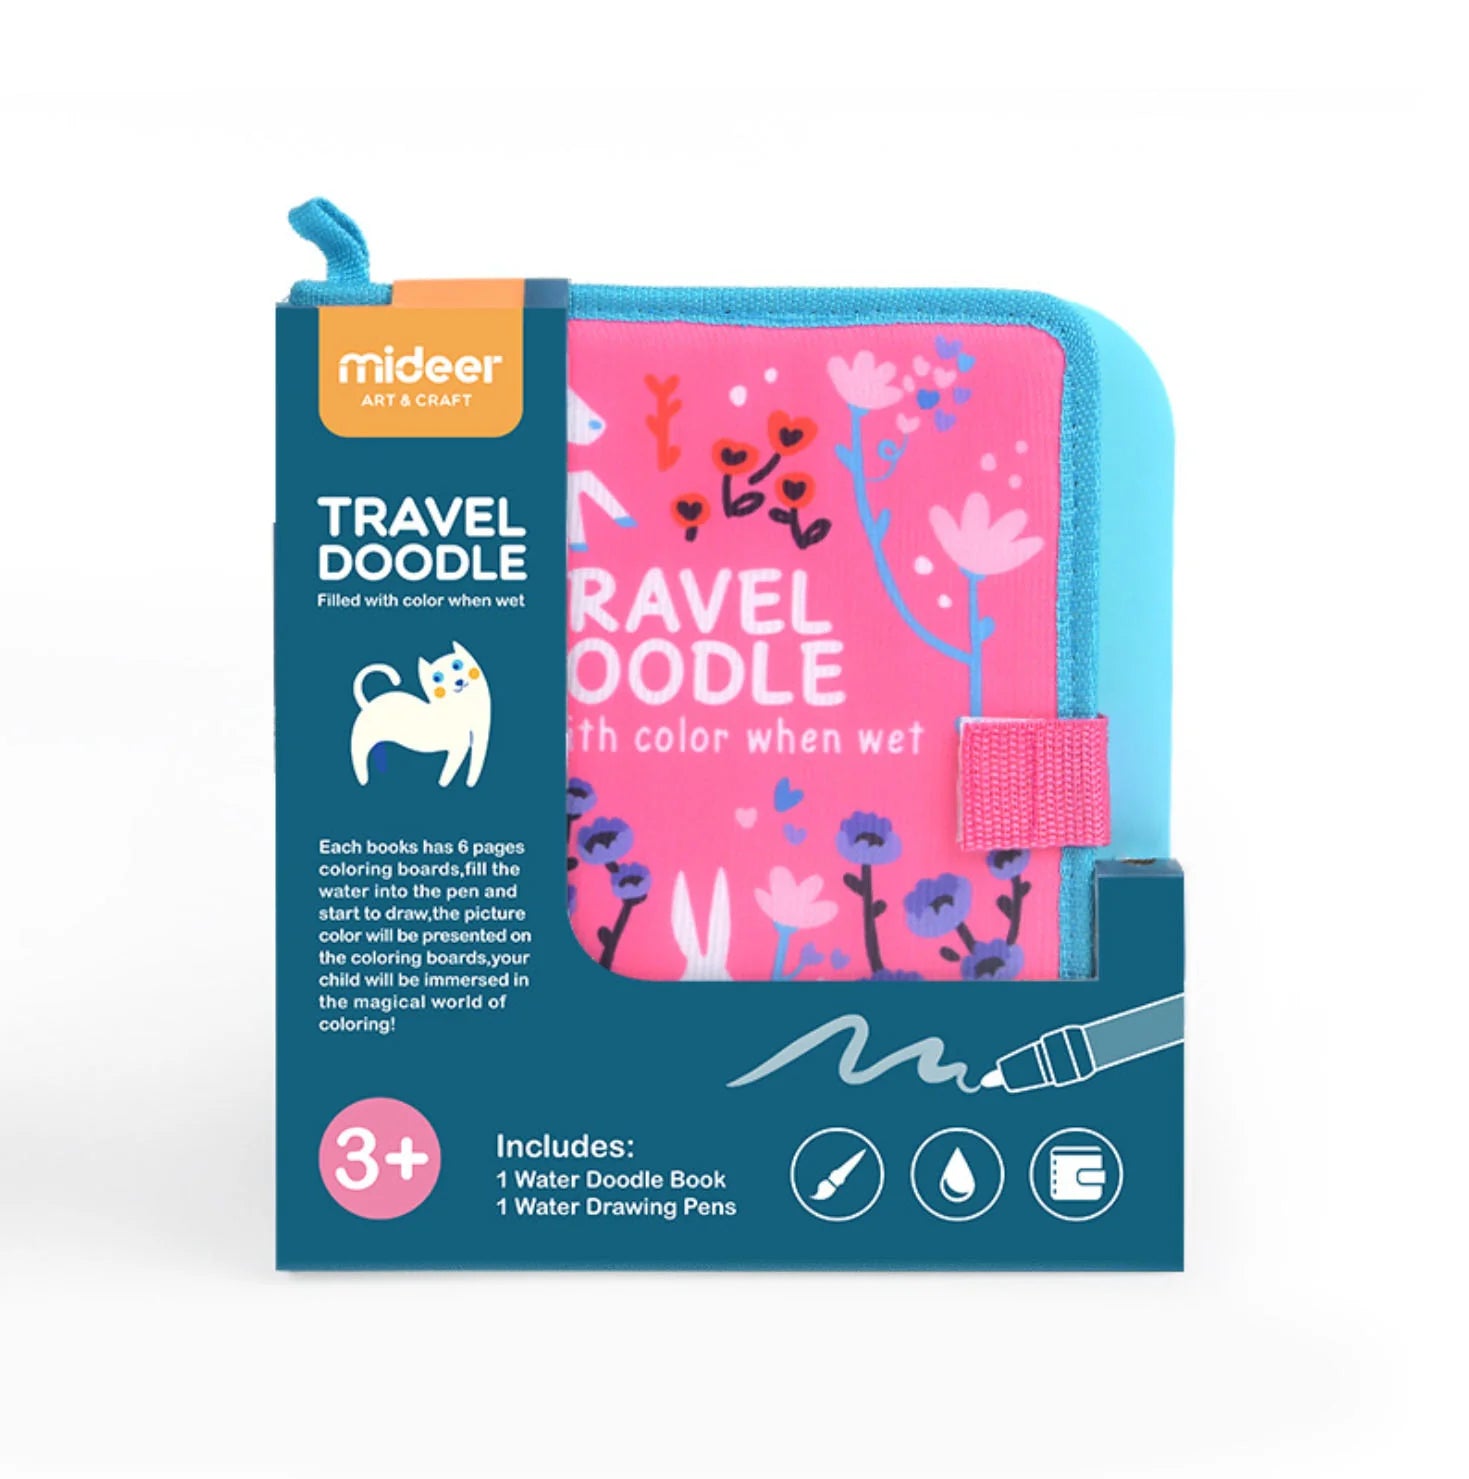 Mideer Travel Doodle – Pink